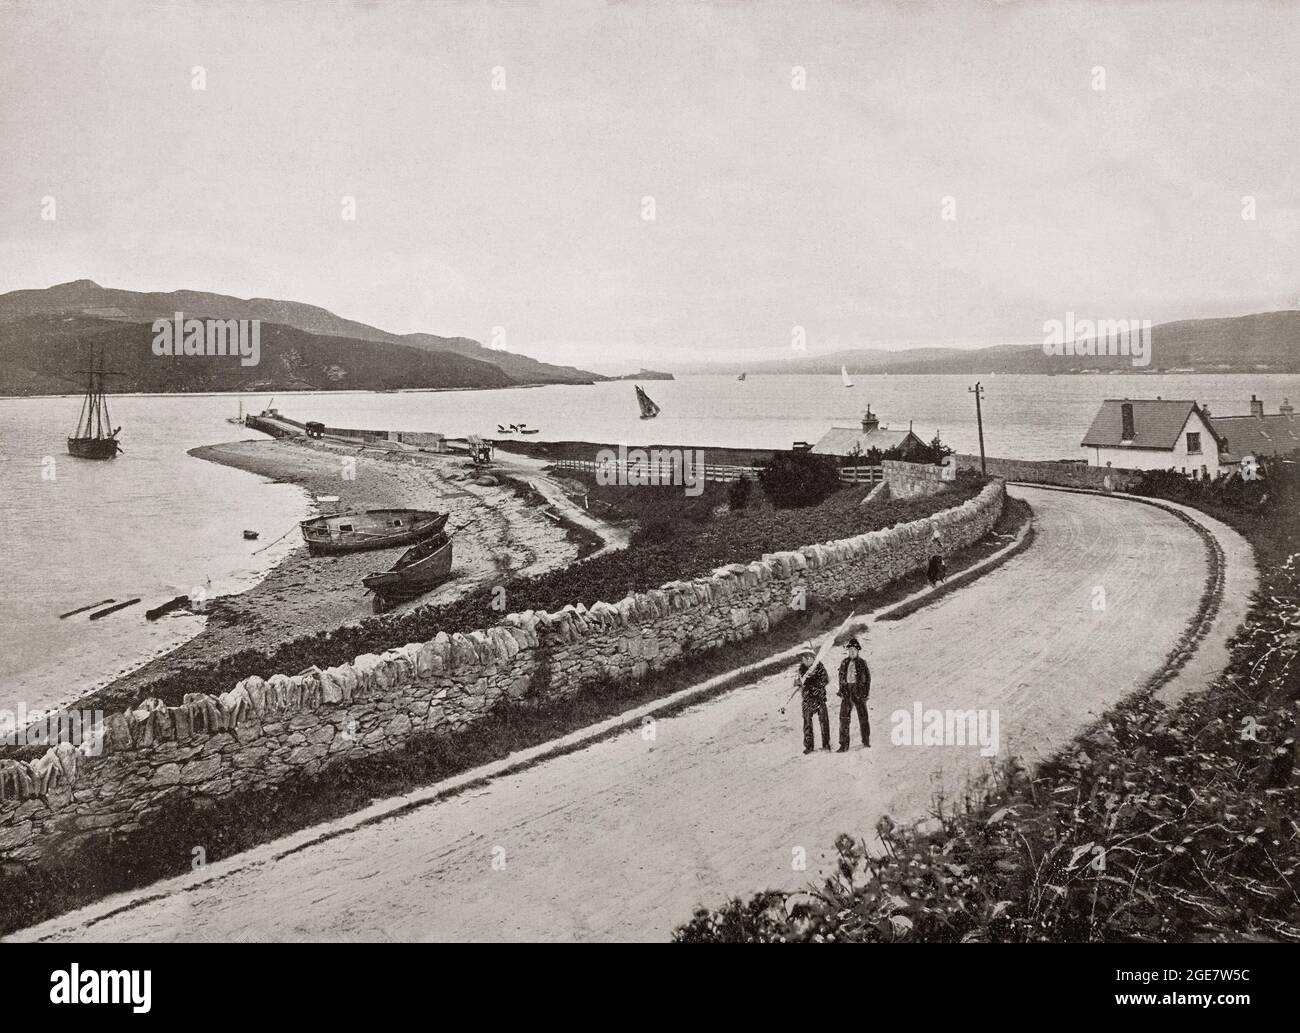 Una vista fine del 19 ° secolo del molo a Fahan sul bordo di Lough Swilly, Inishowen nel nord della contea di Donegal, Irlanda. Foto Stock